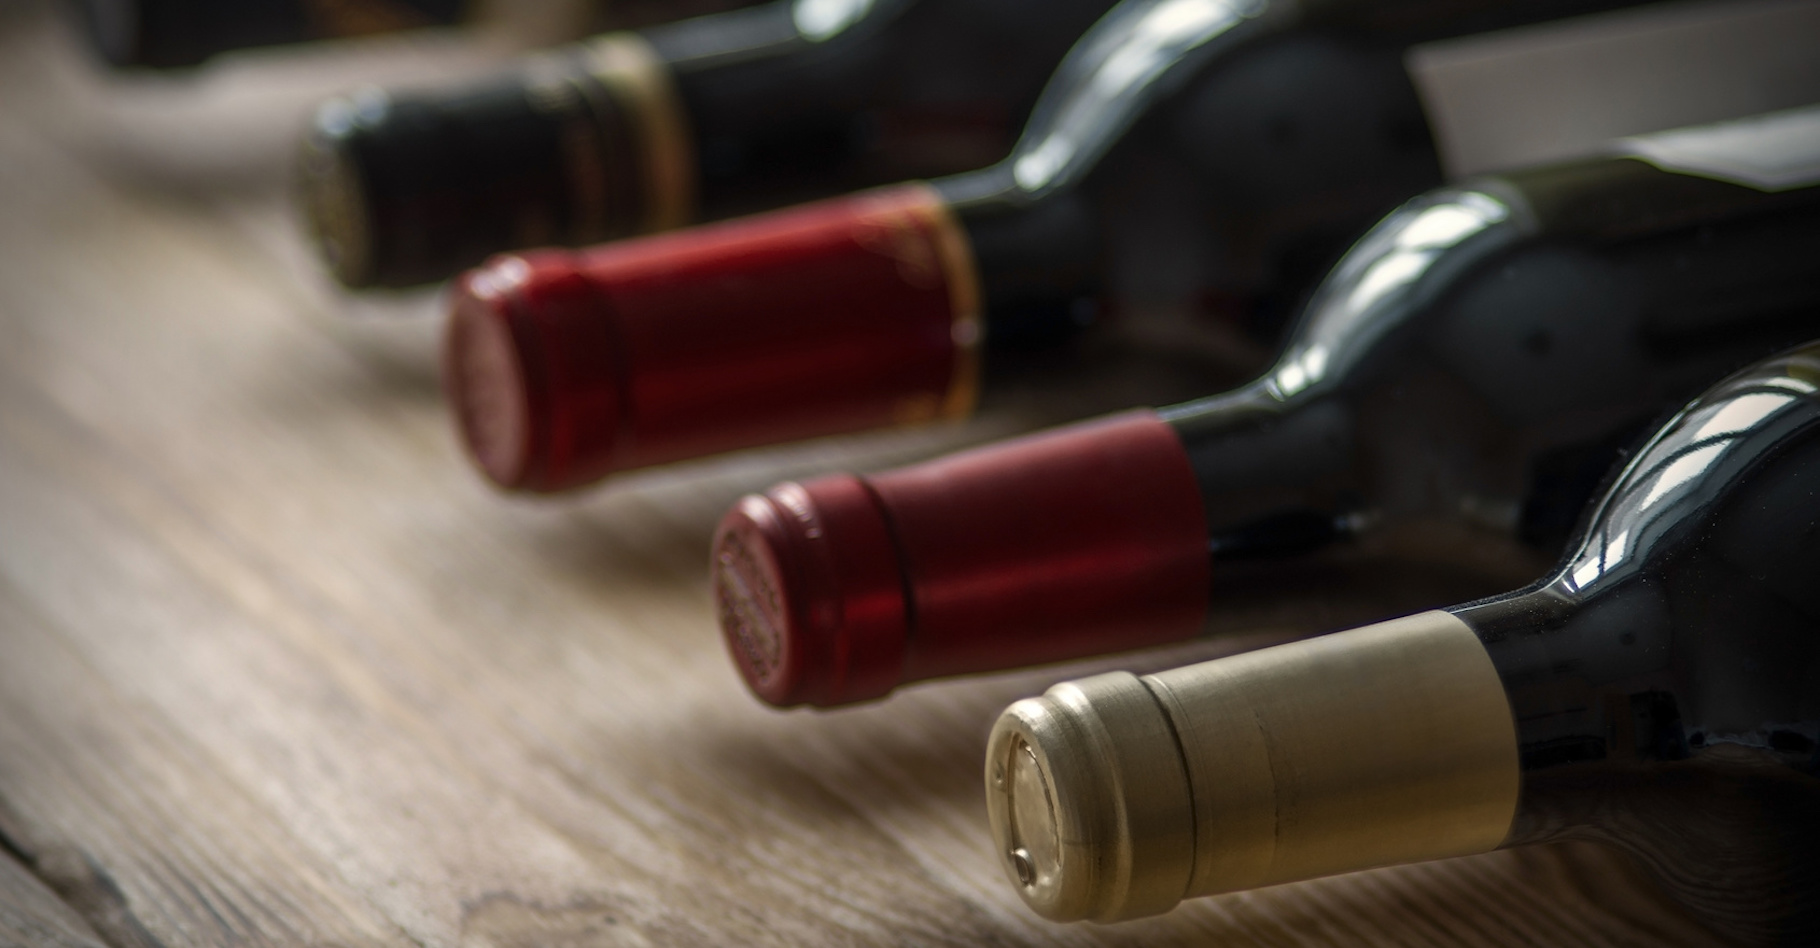 Les bouteilles de vin doivent être conservées couchées afin d'éviter l’oxydation du vin. © aleks-p, Fotolia